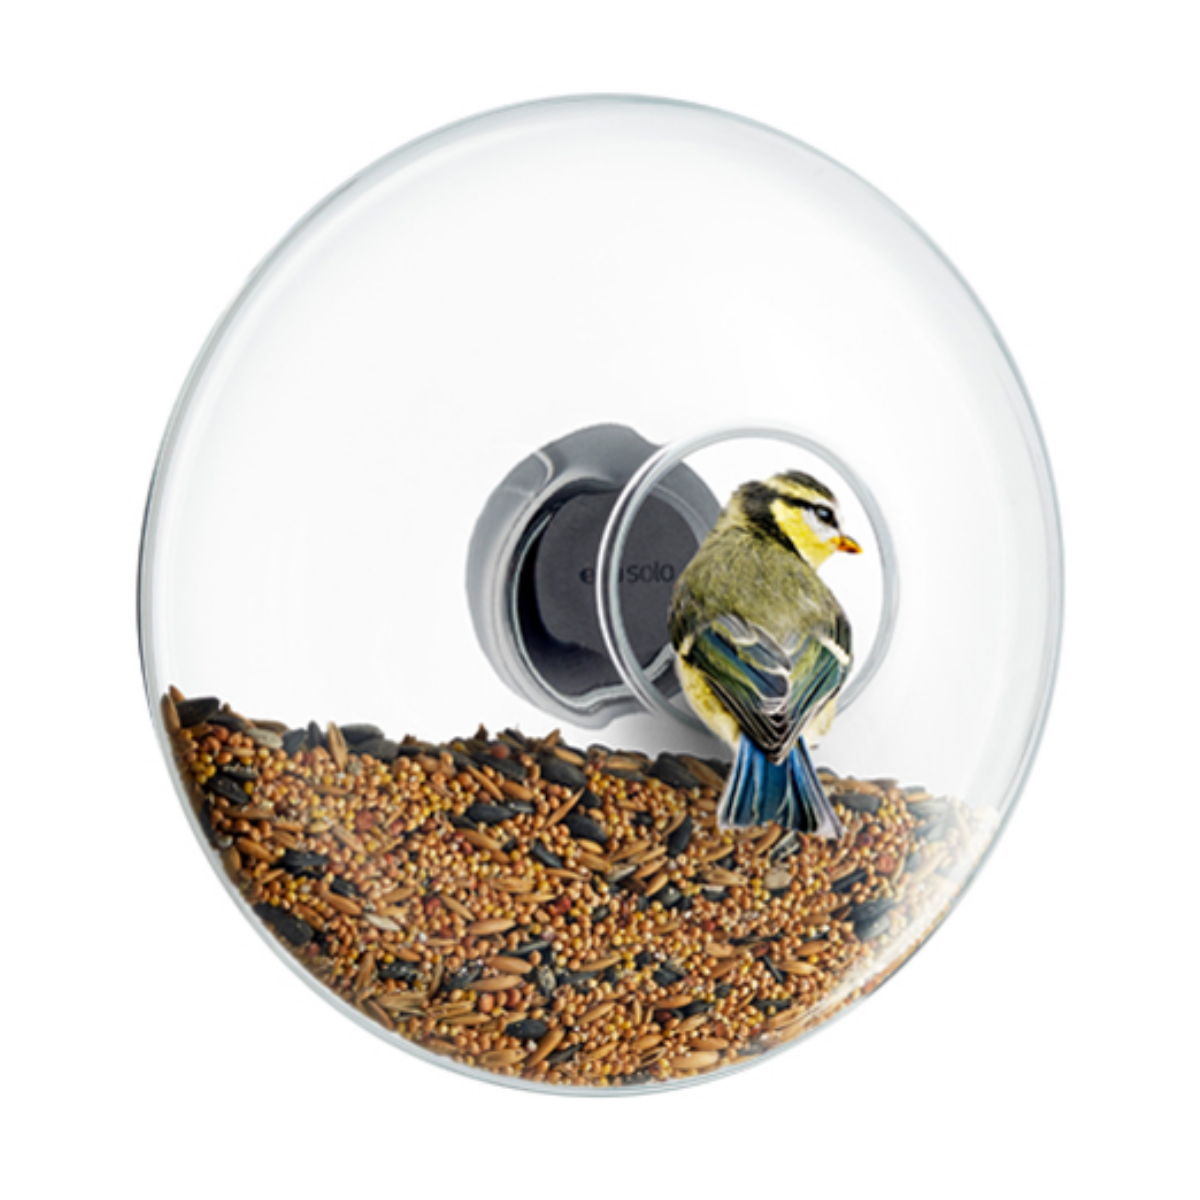 kerek, ablakra rögzíthető átlátszó üveg madáretető, kör alakú nyílásán cinege üldögél